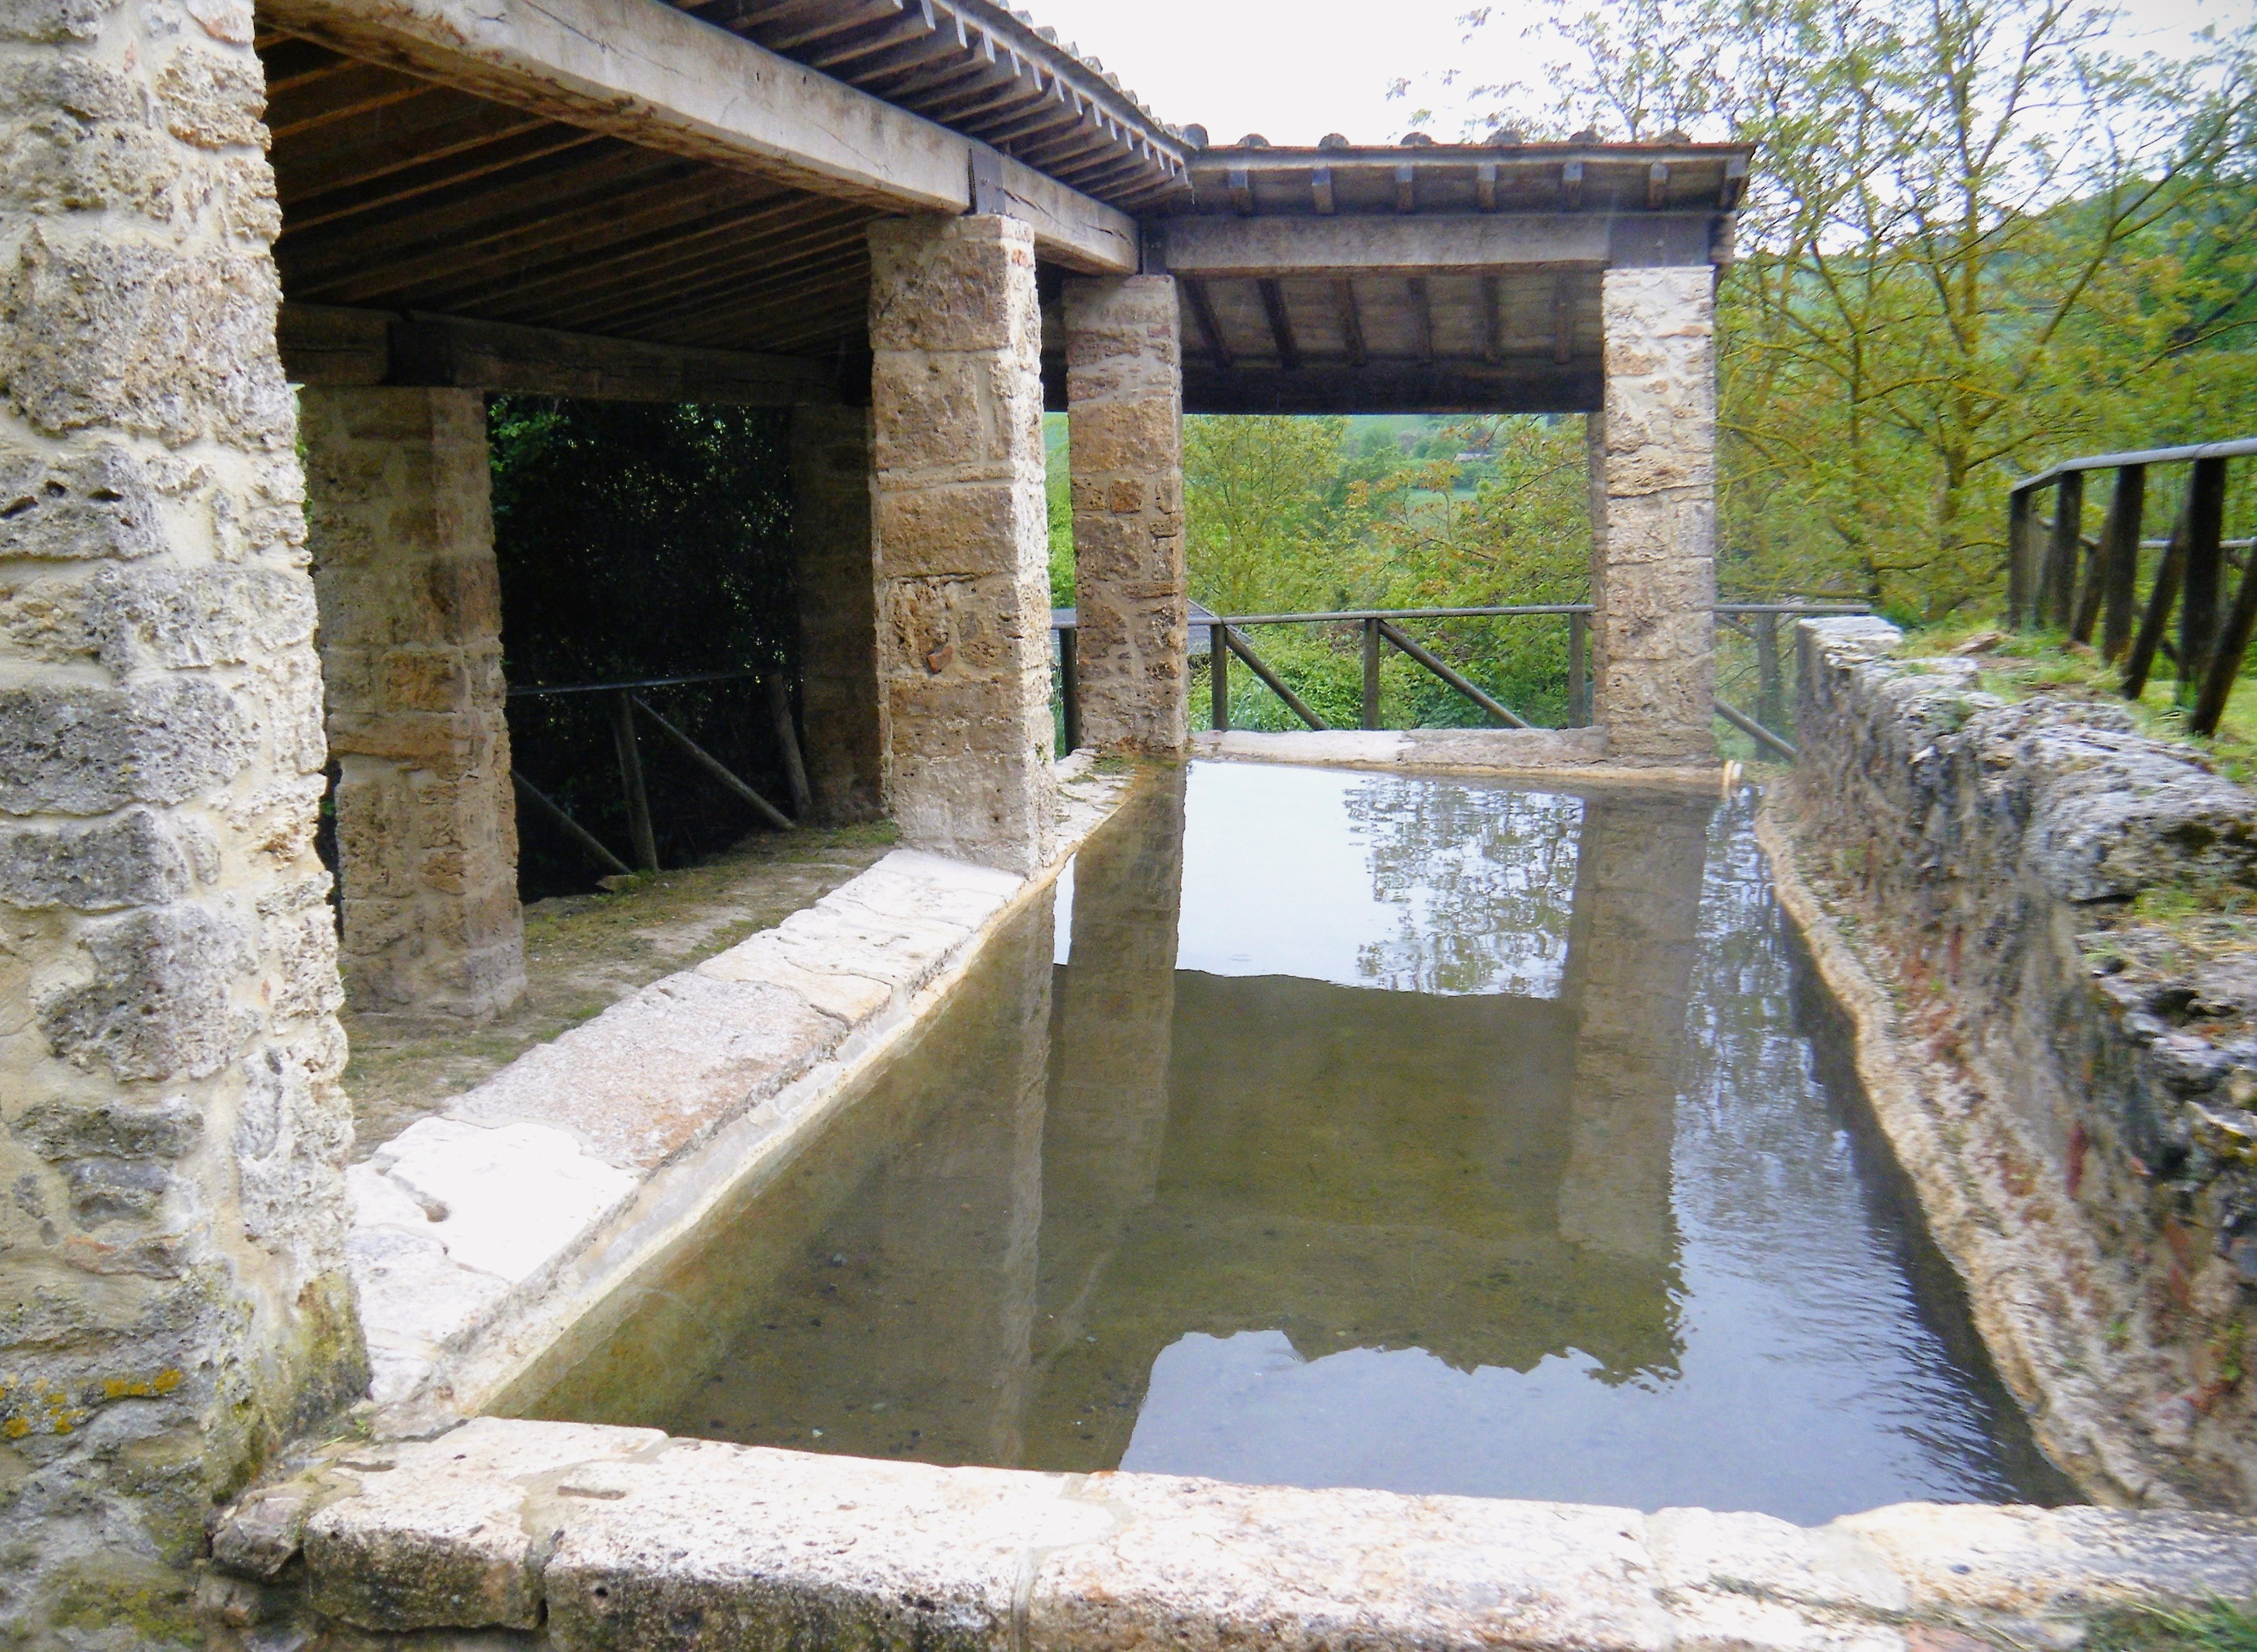 File:Lavatoio in antiche vasche termali.jpg - Wikimedia Commons